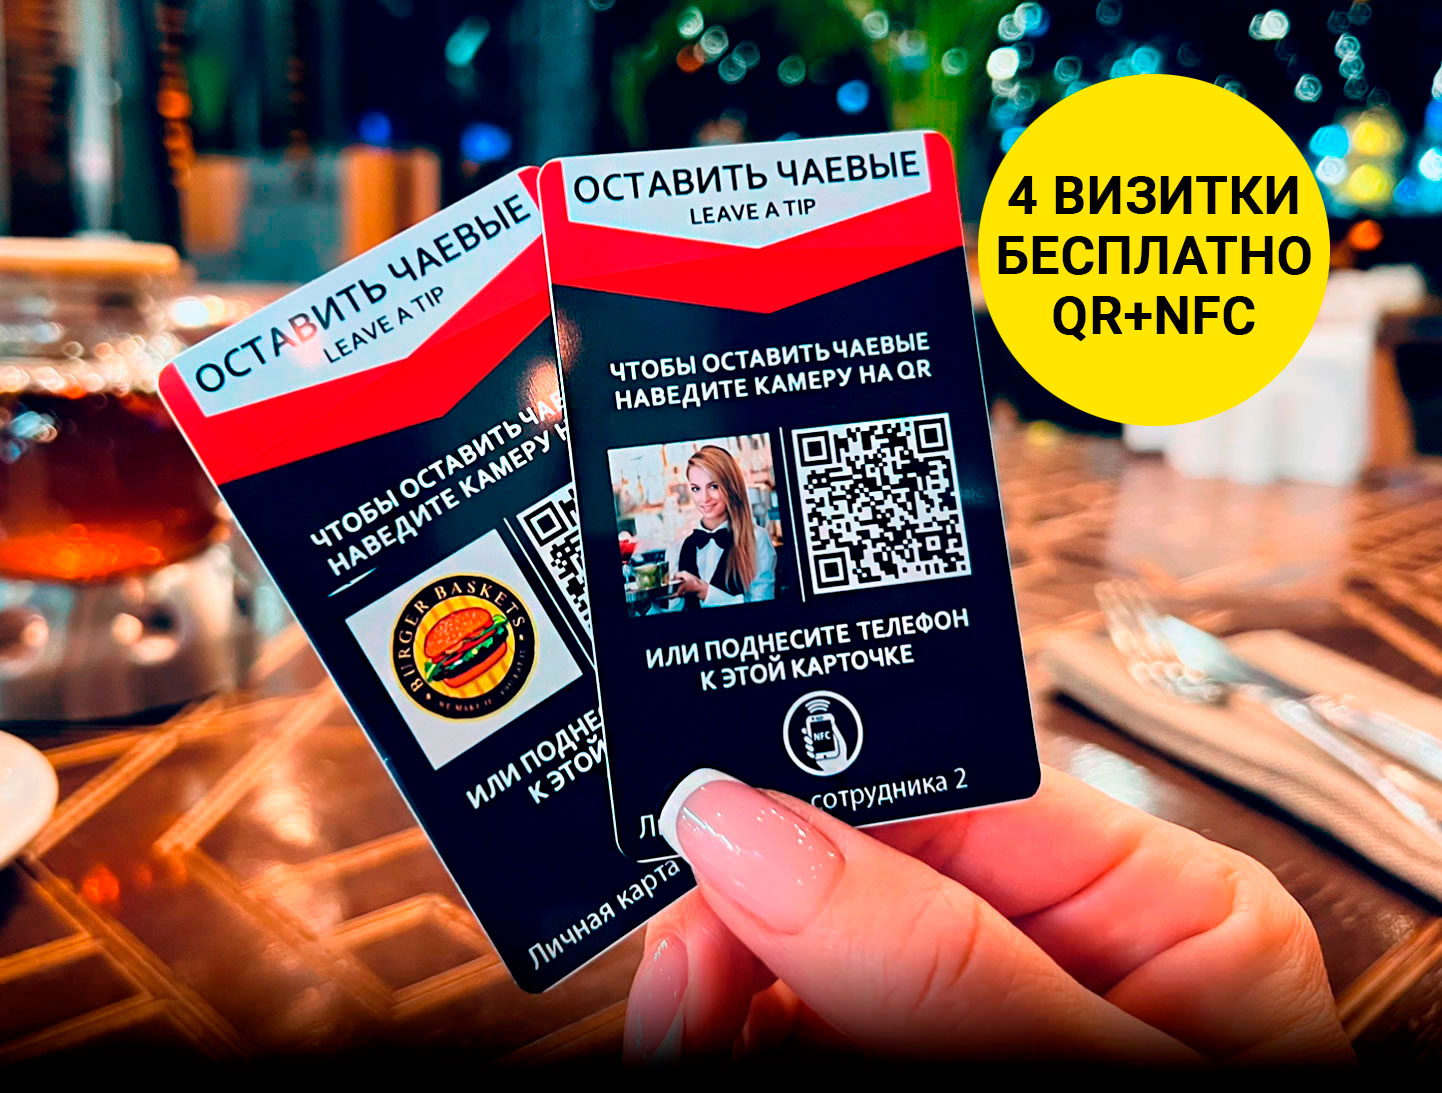 Онлайн чаевые по QR-коду или NFC - 4 визитки бесплатно